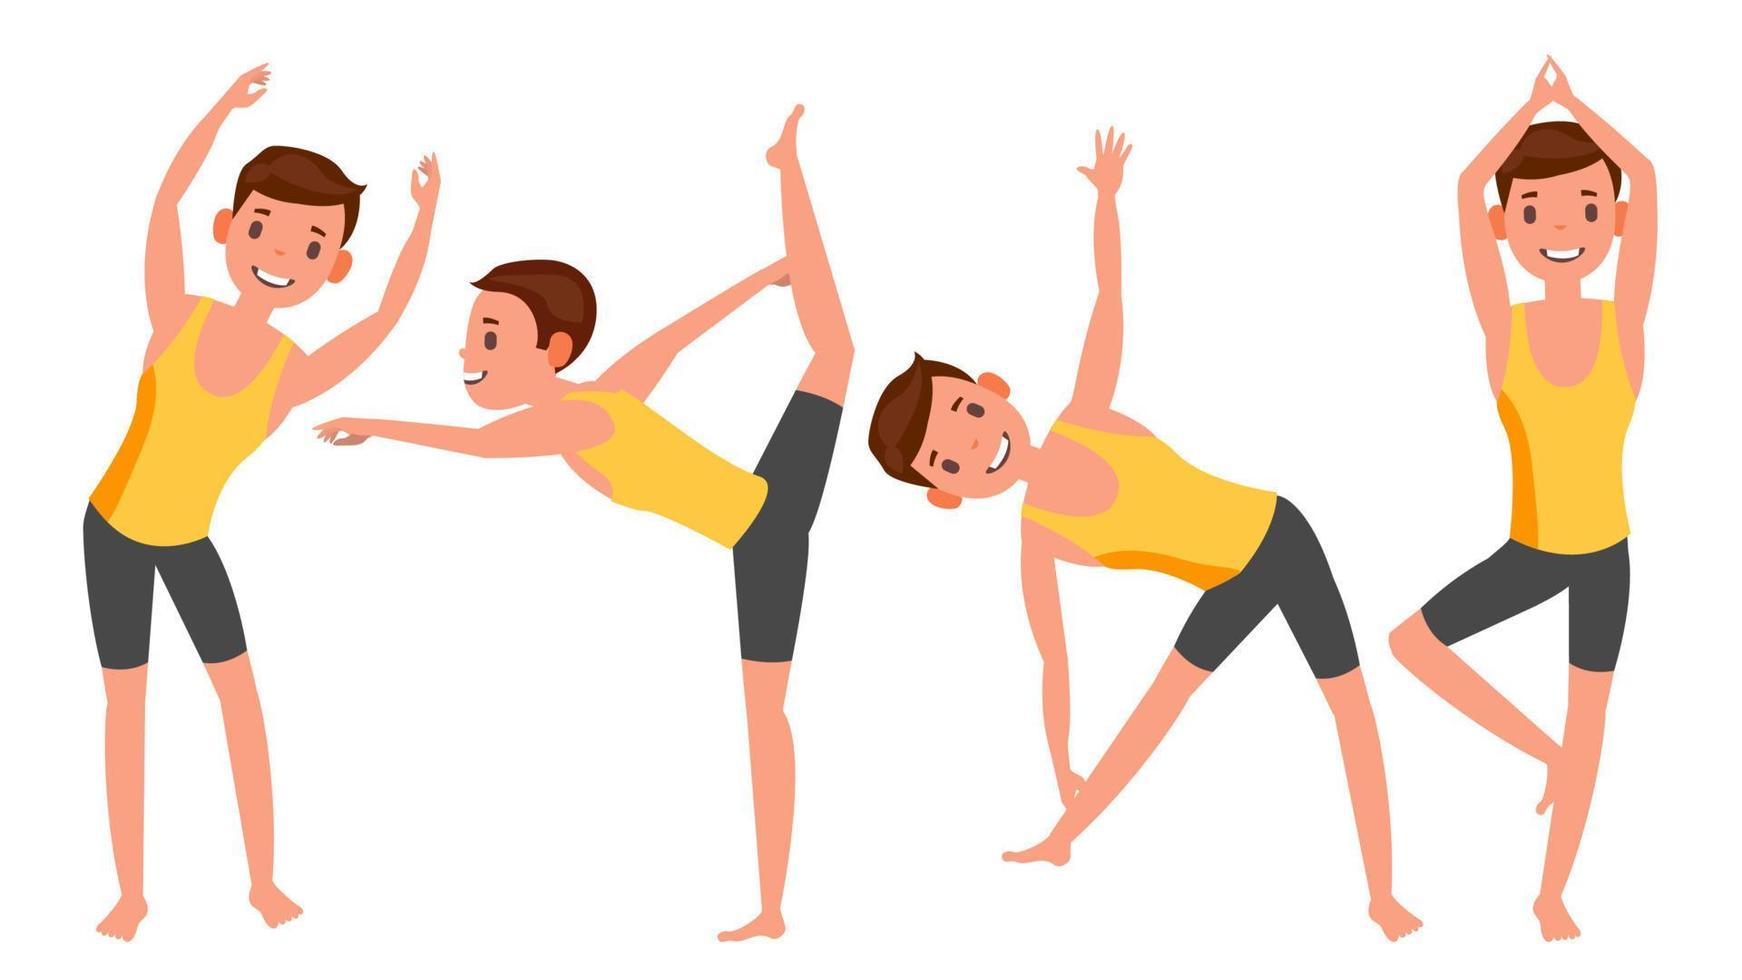 poses de homem de ioga vetor definido. garota. poses de ioga. fazendo exercícios de ioga. ilustração plana dos desenhos animados